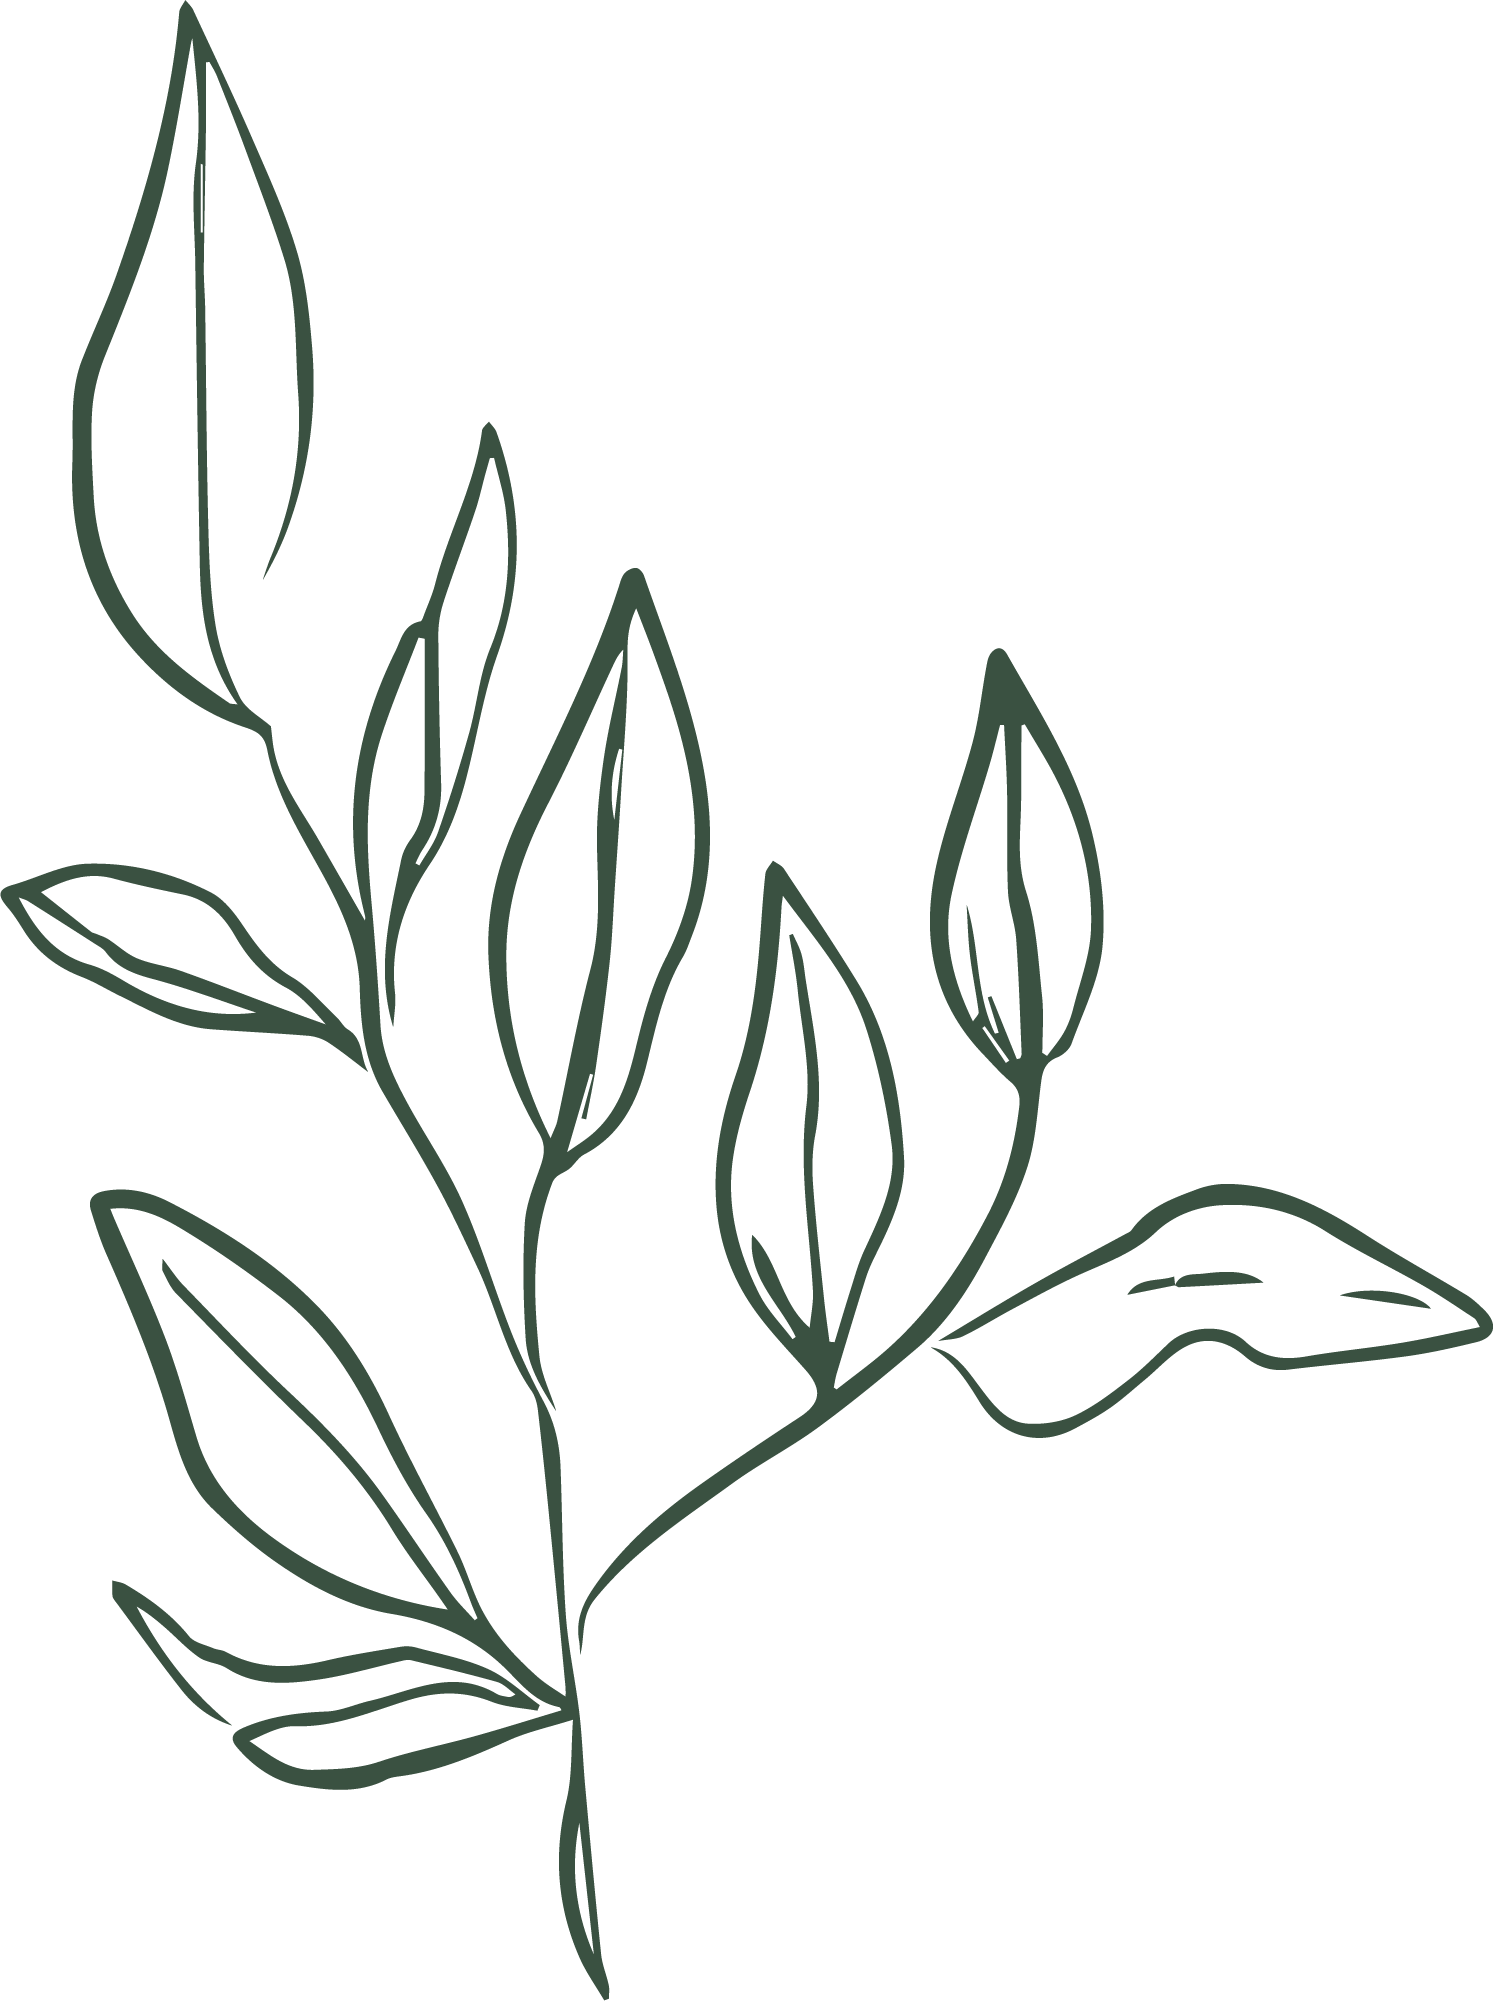 florals_leaf-2-pine